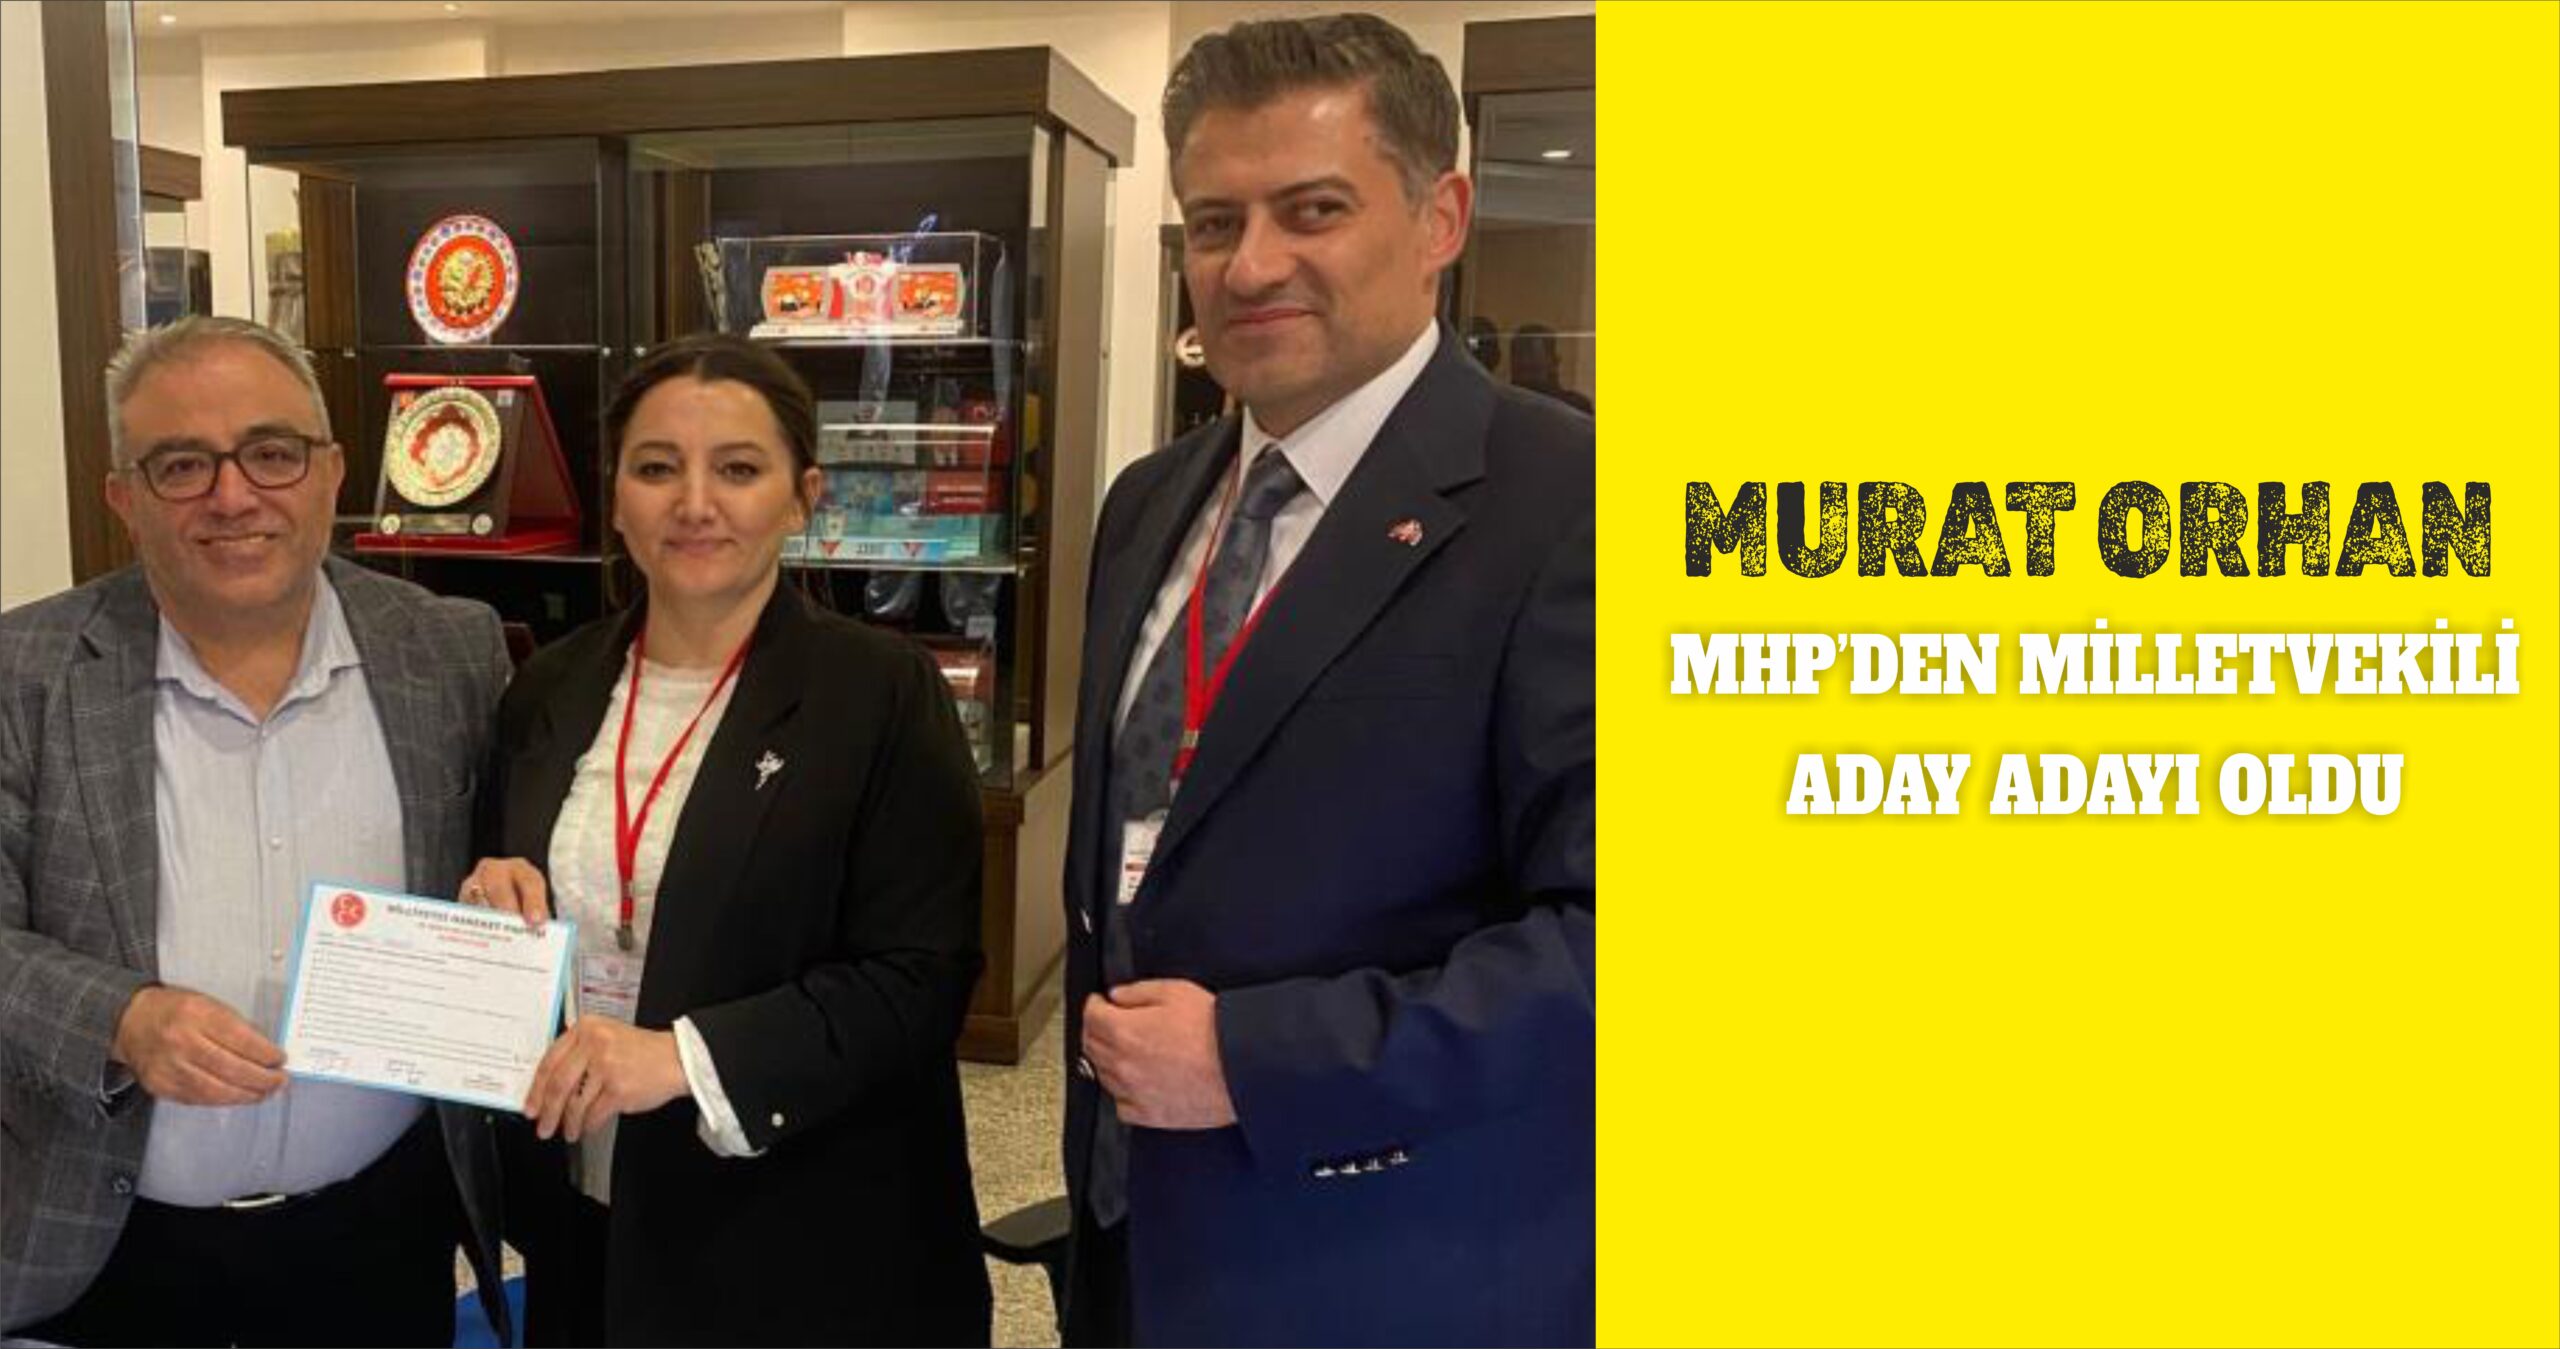 Murat Orhan MHP’den milletvekili aday adayı oldu